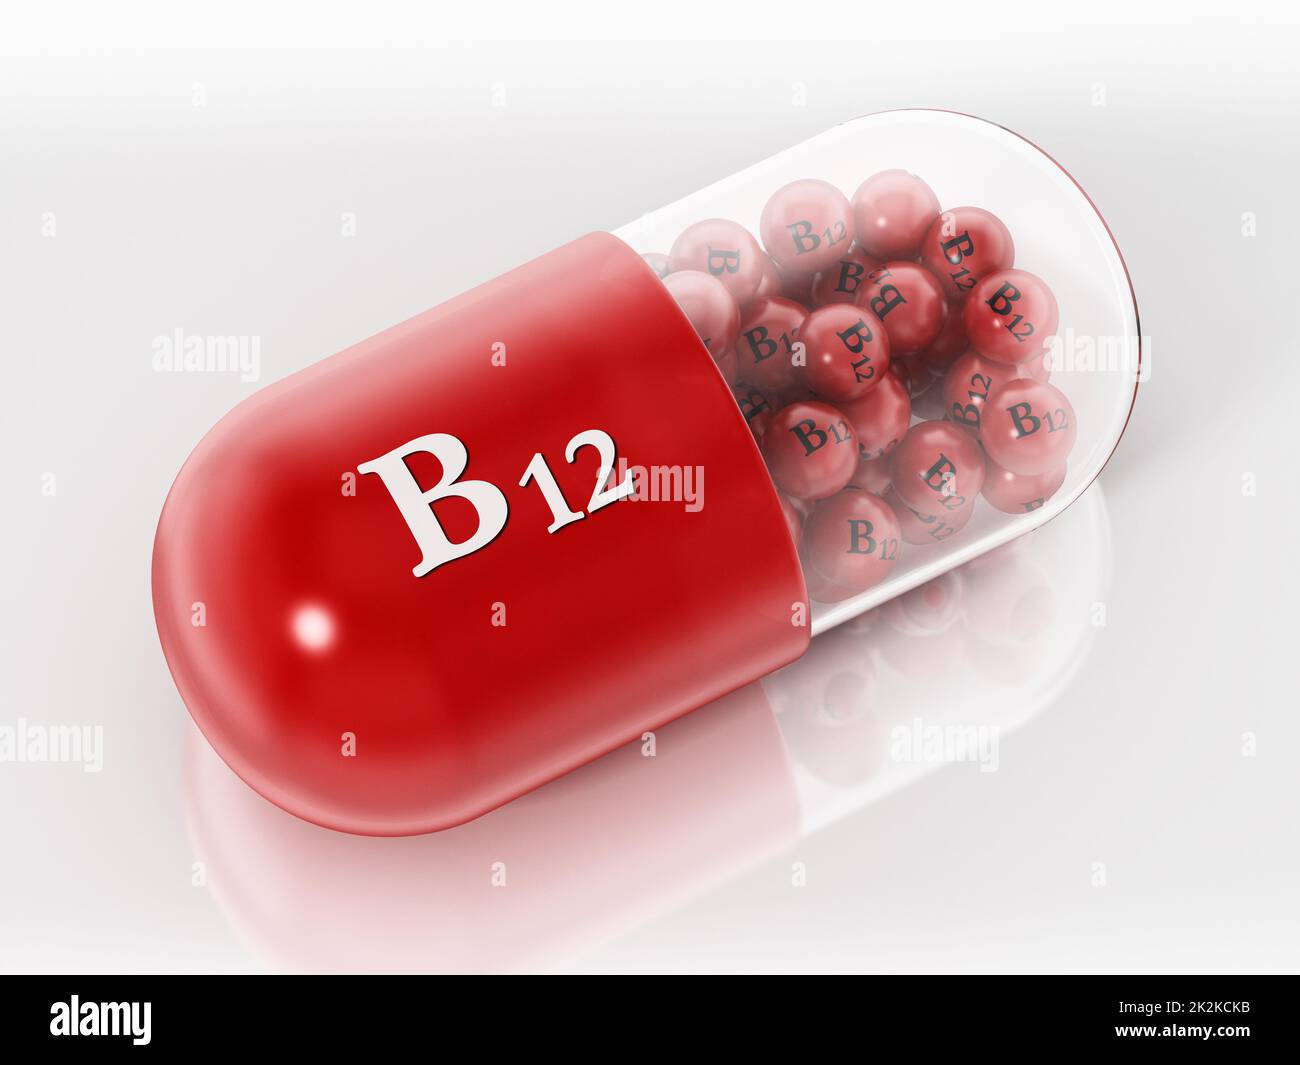 Pilule de vitamine B12 avec de petites sphères isolées sur fond blanc. 3D illustration Banque D'Images